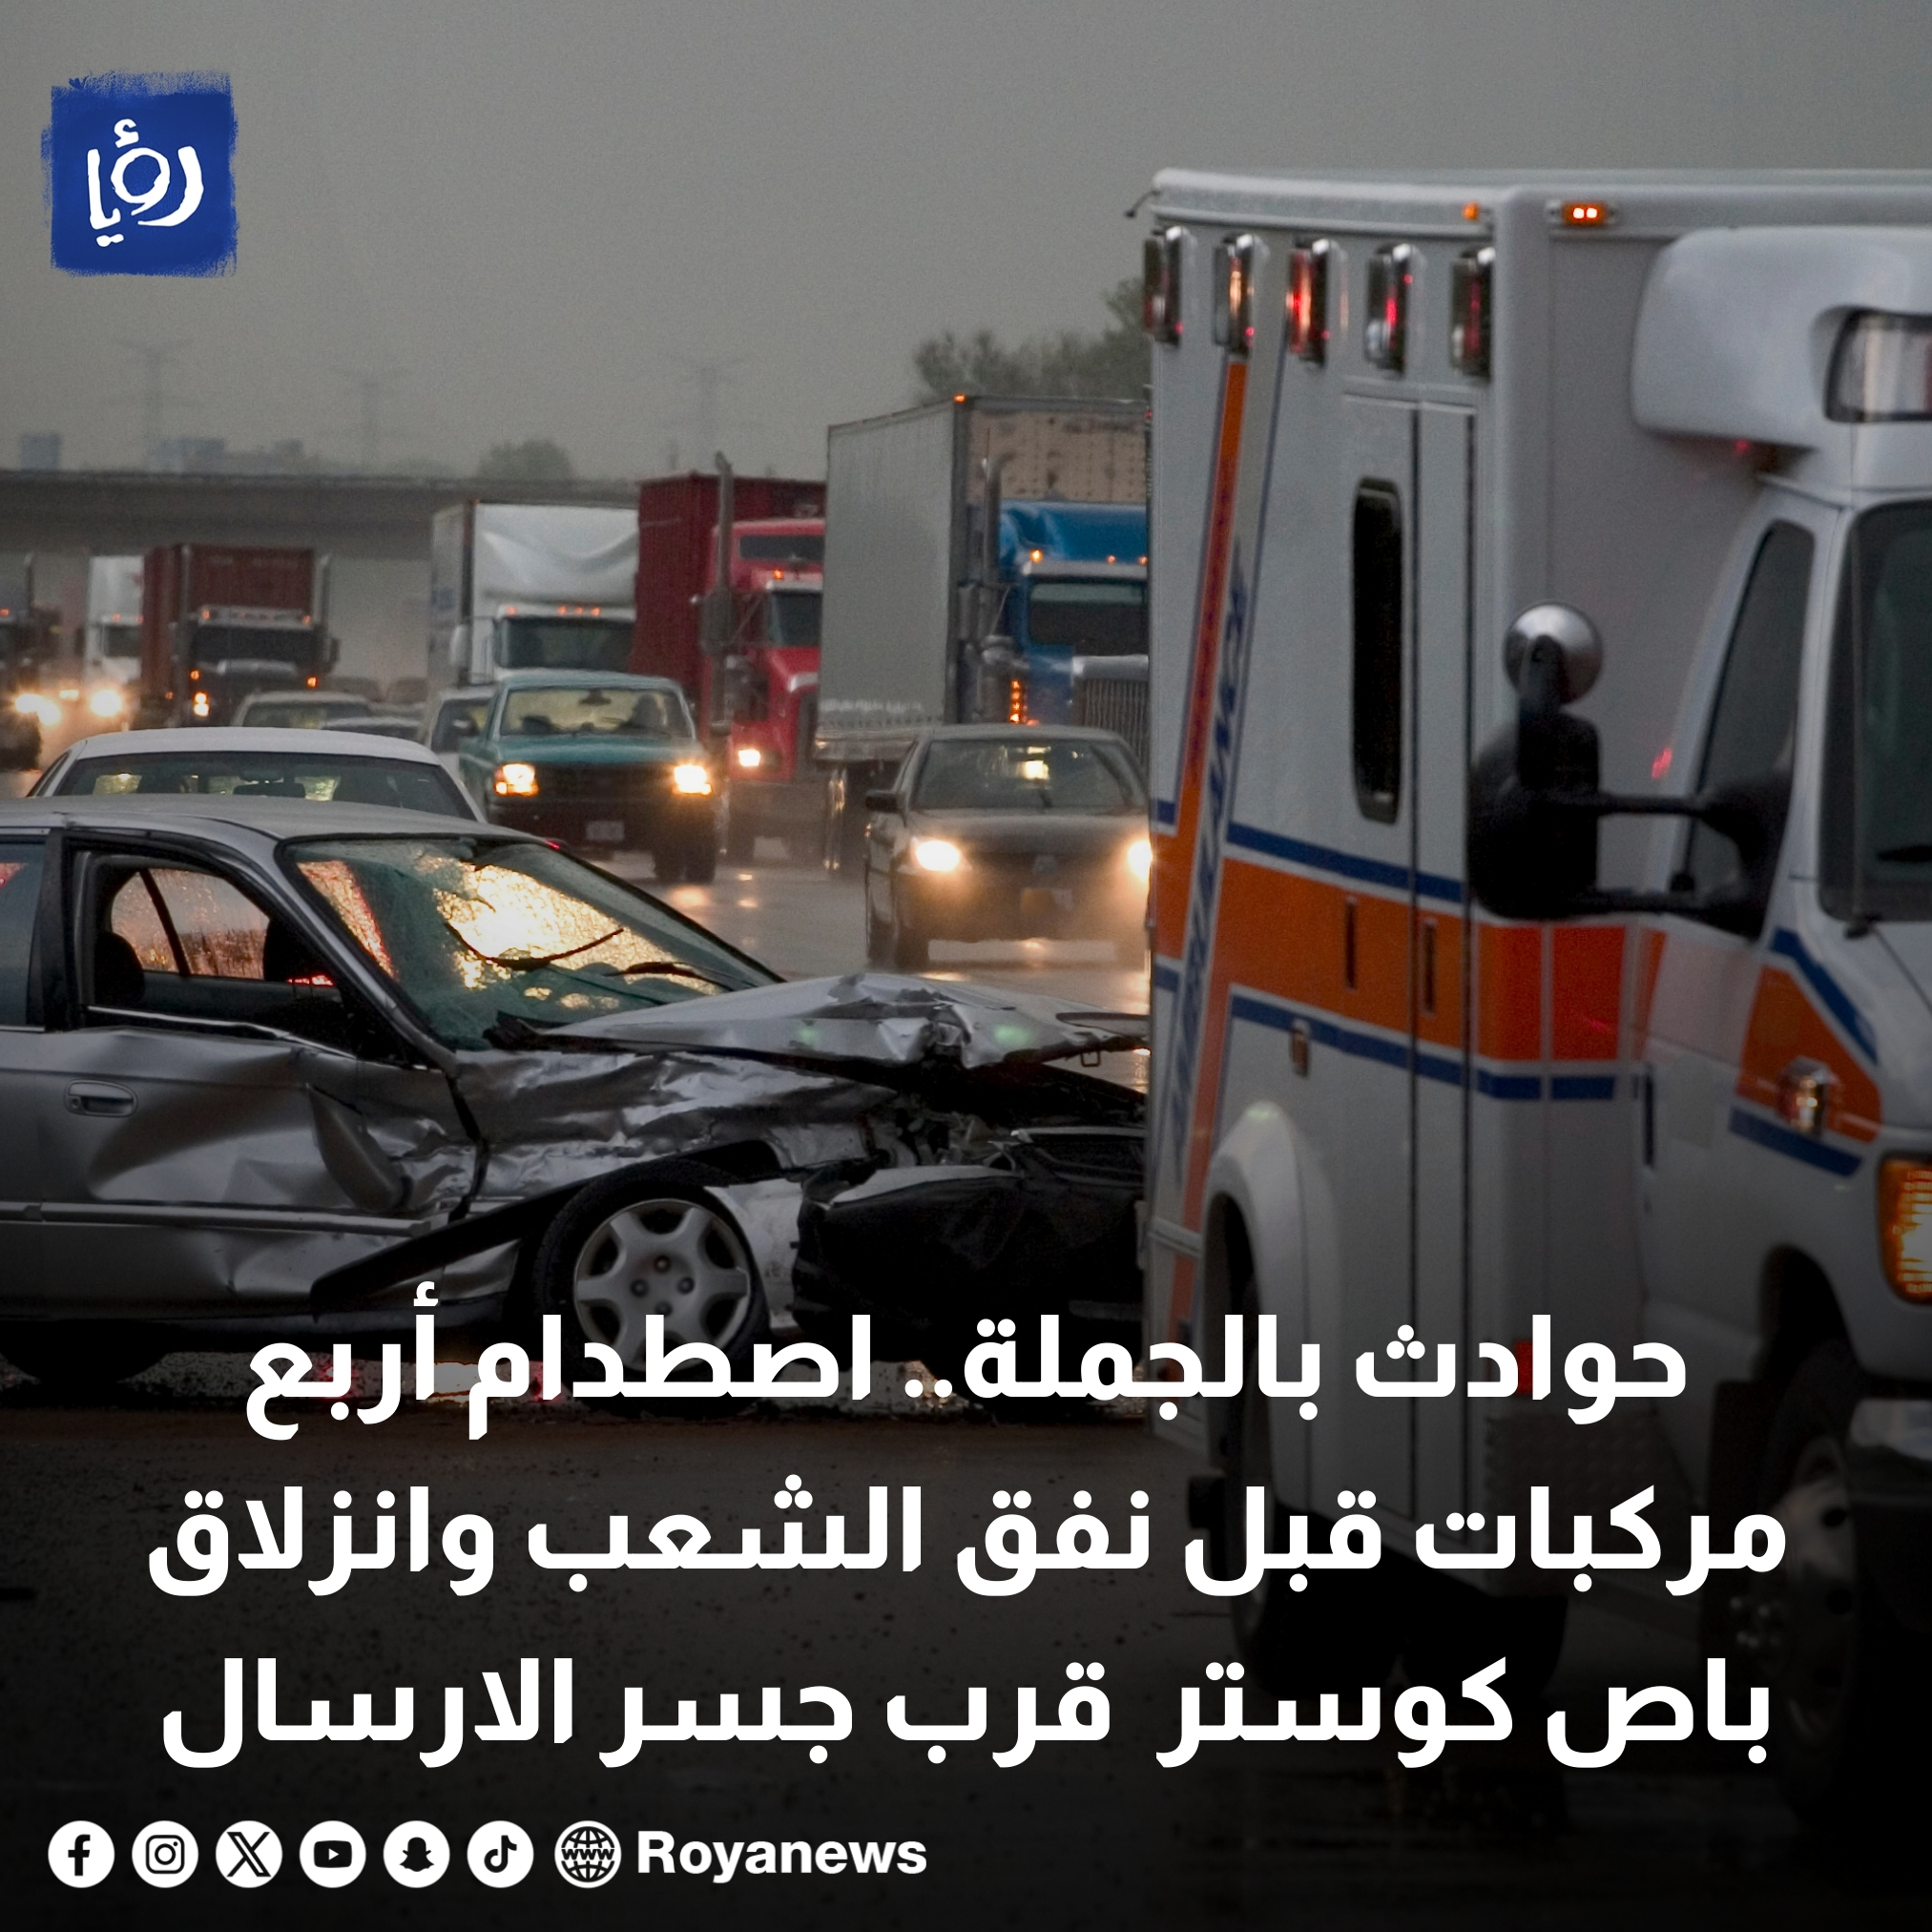 حوادث بالجملة.. اصطدام أربع مركبات قبل نفق الشعب وانزلاق باص كوستر قرب جسر الارسال #عاجل 